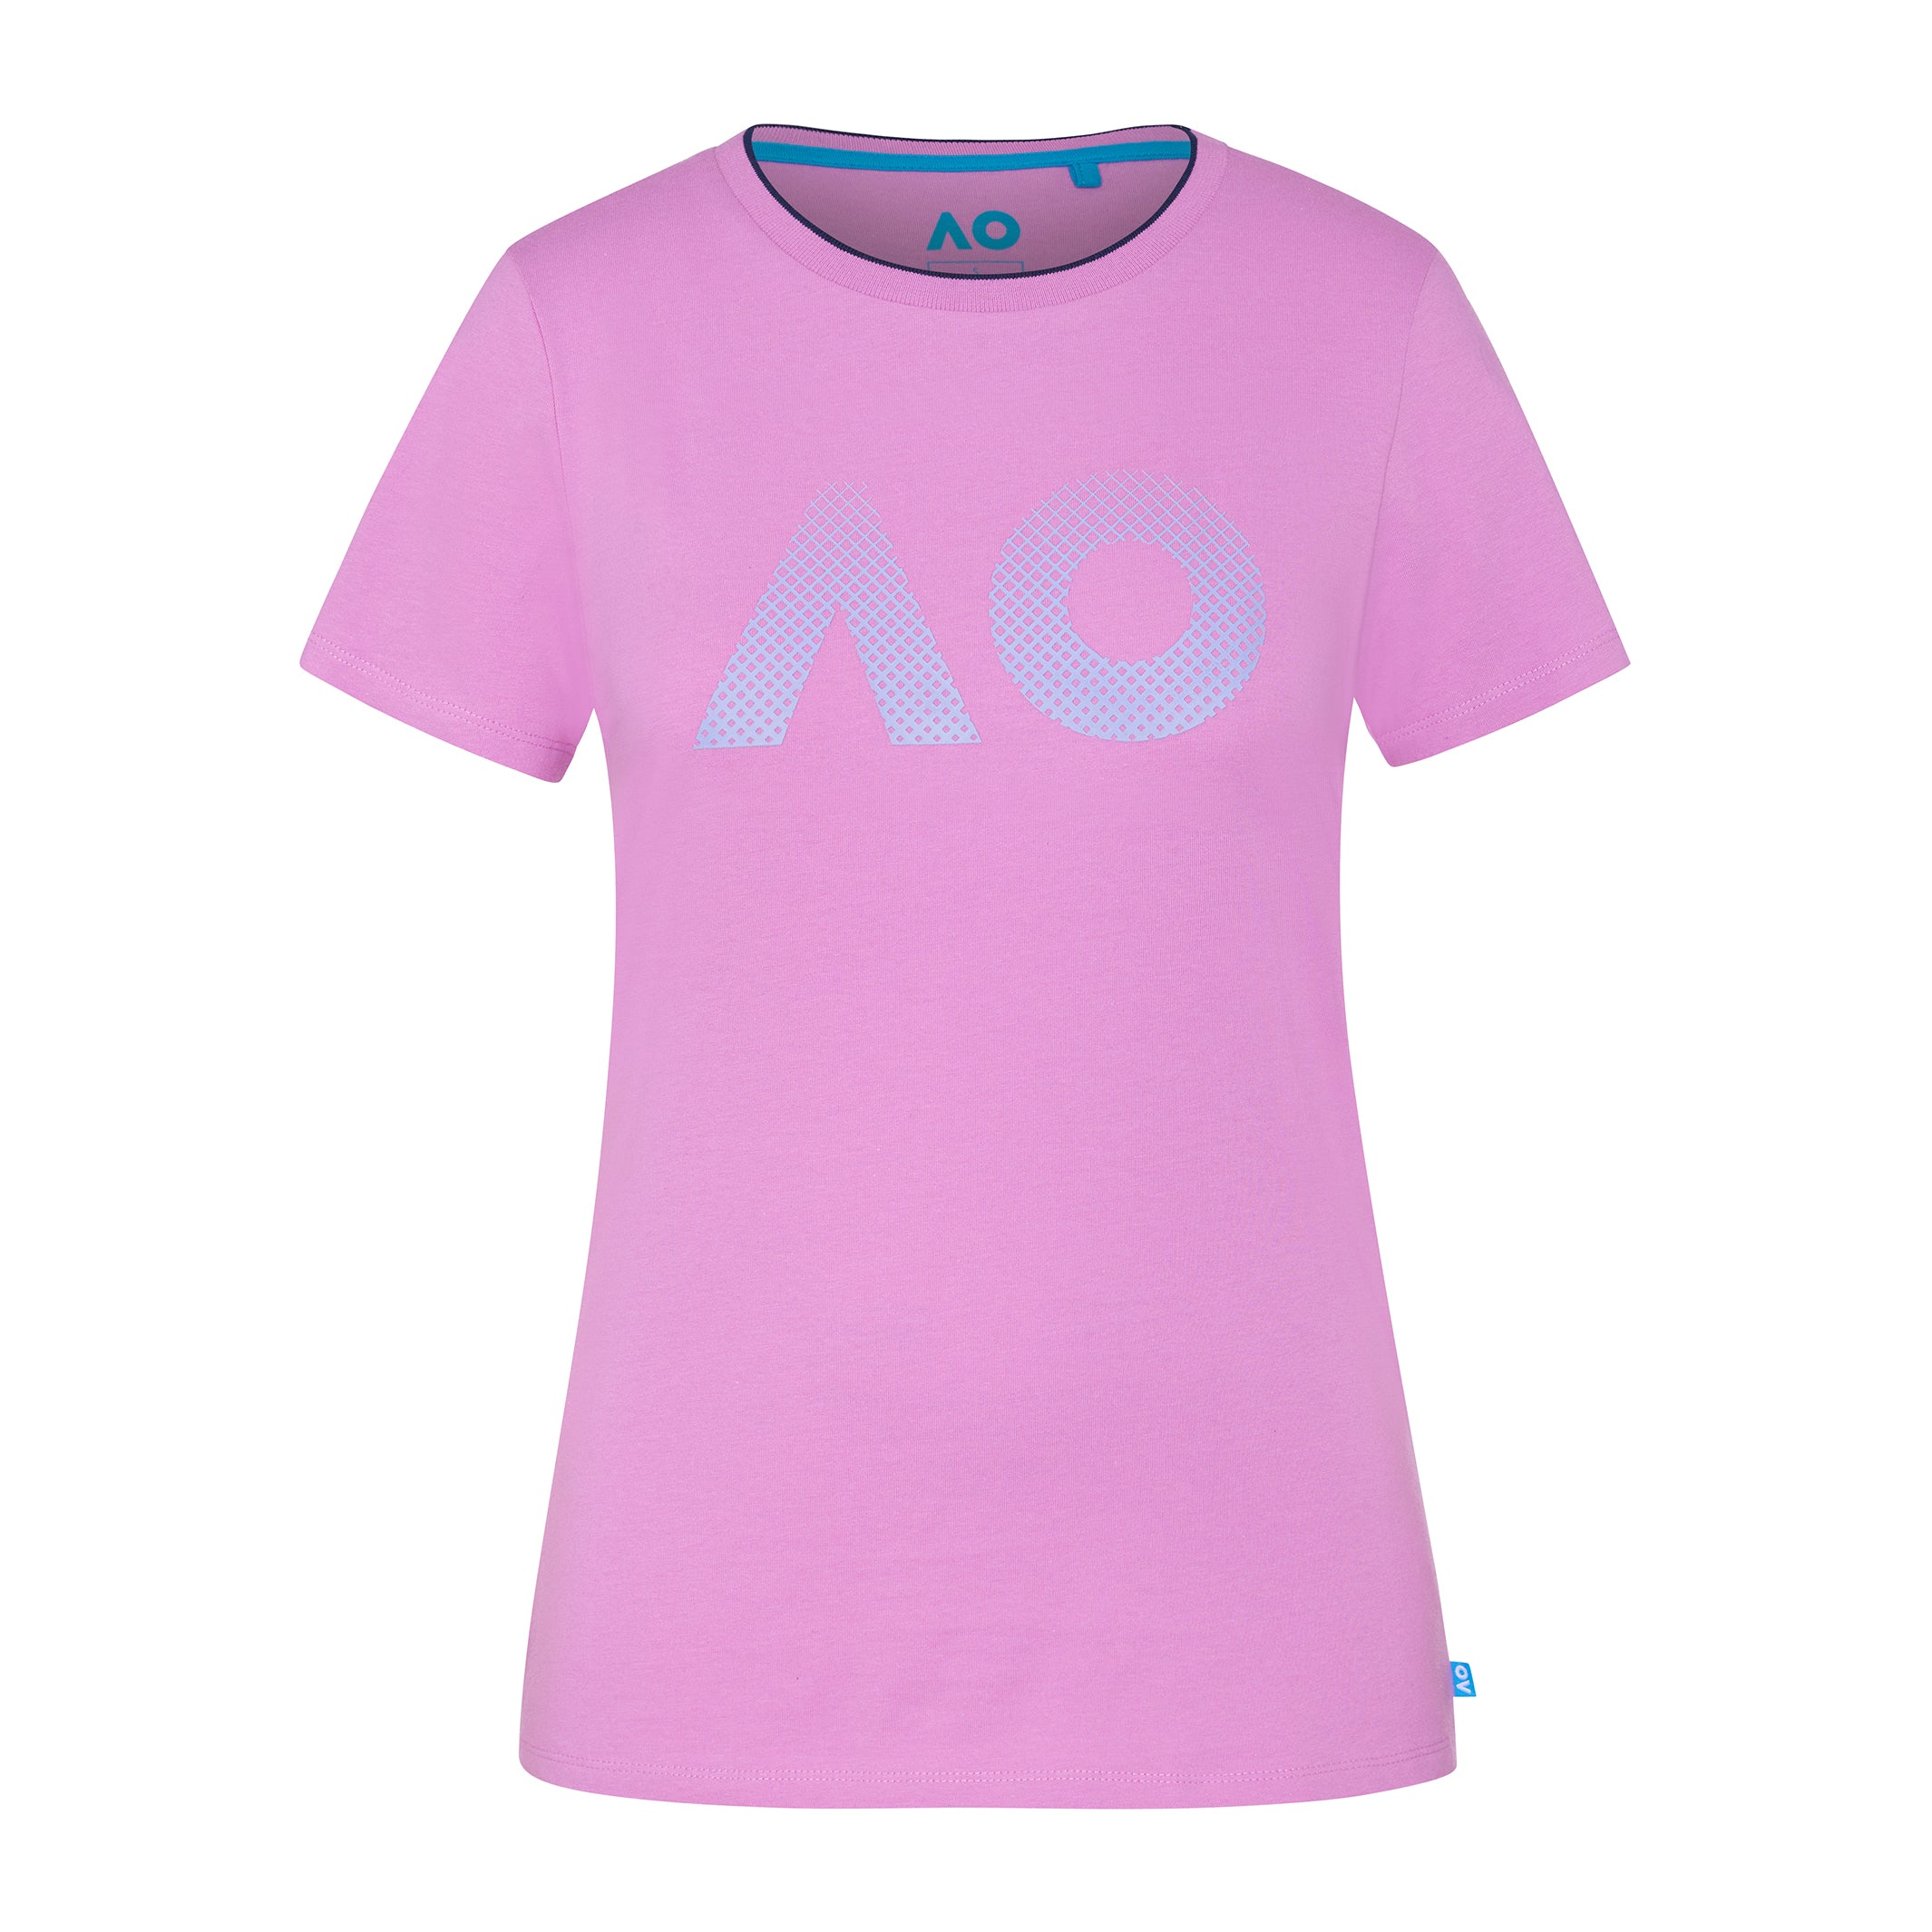 Women's Pink T-Shirt AO Textured Logo Front View